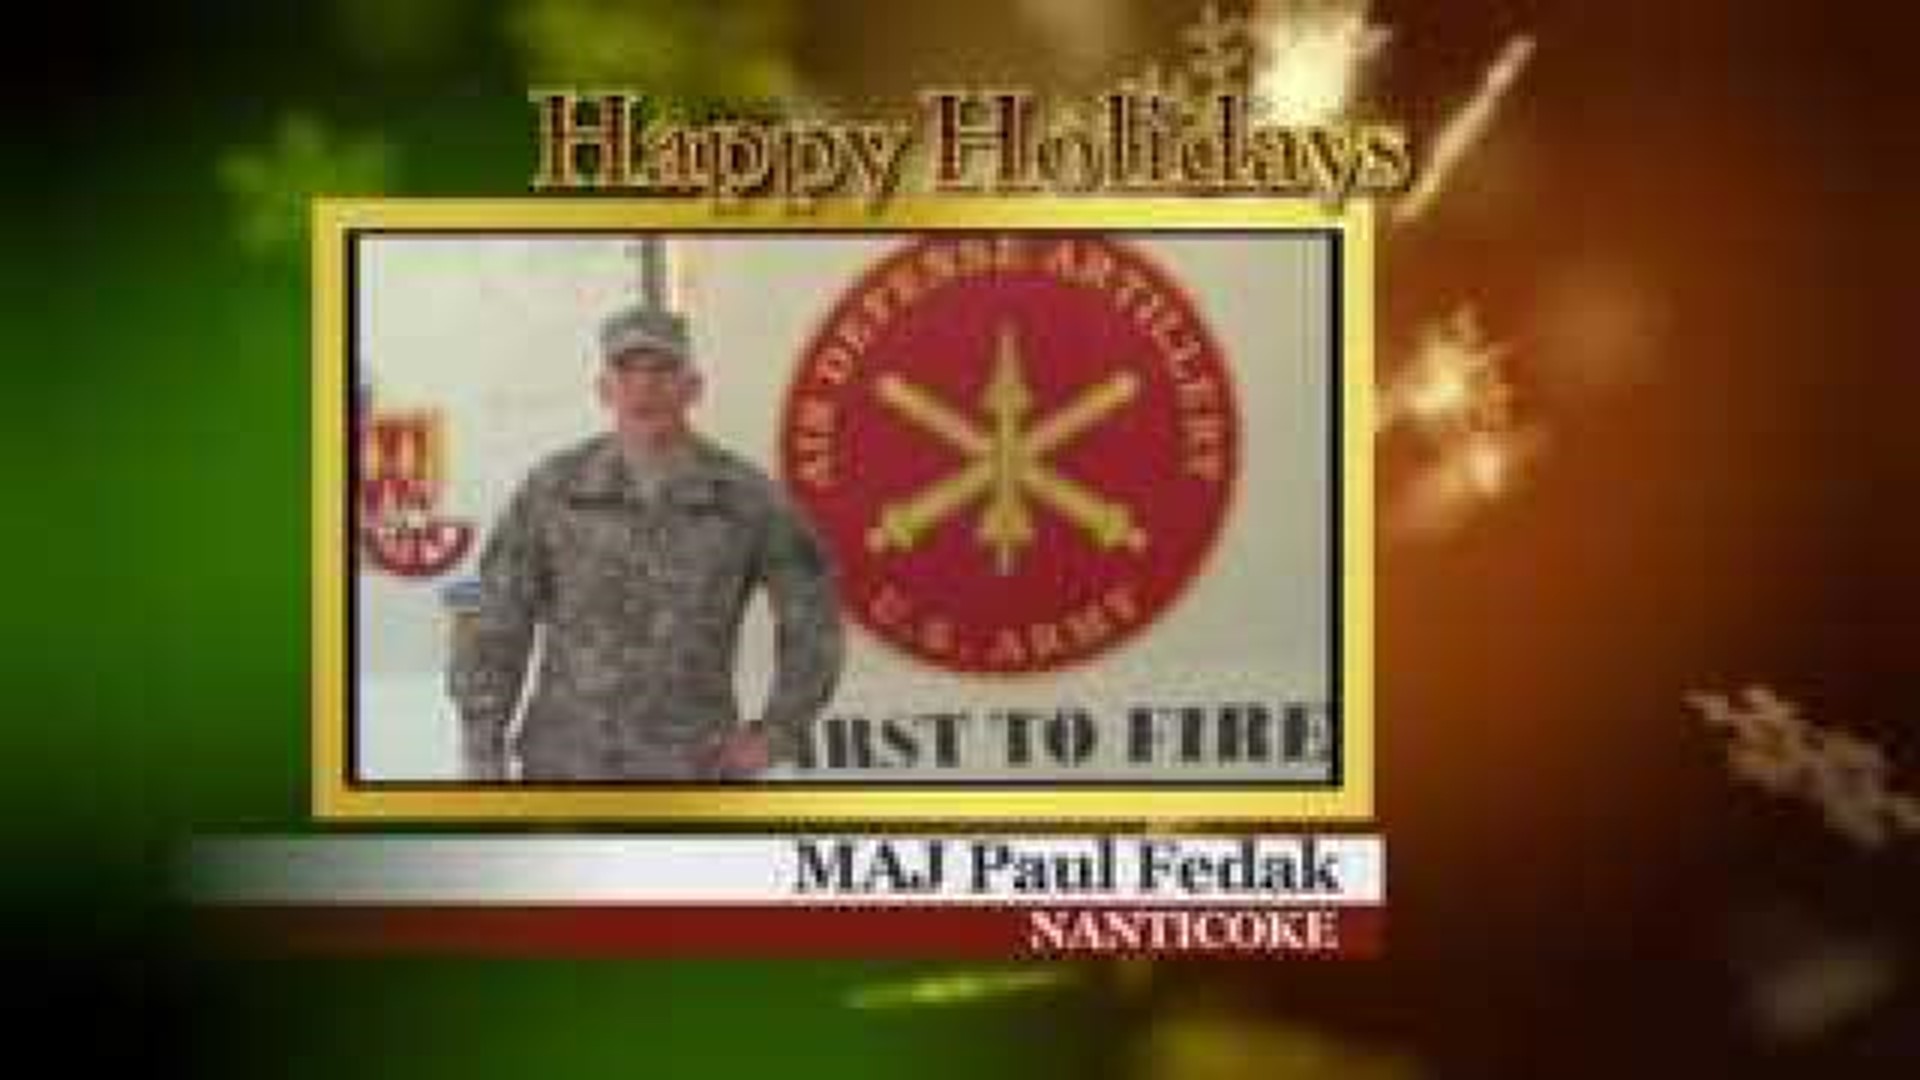 Military Greeting: MAJ Paul Fedak